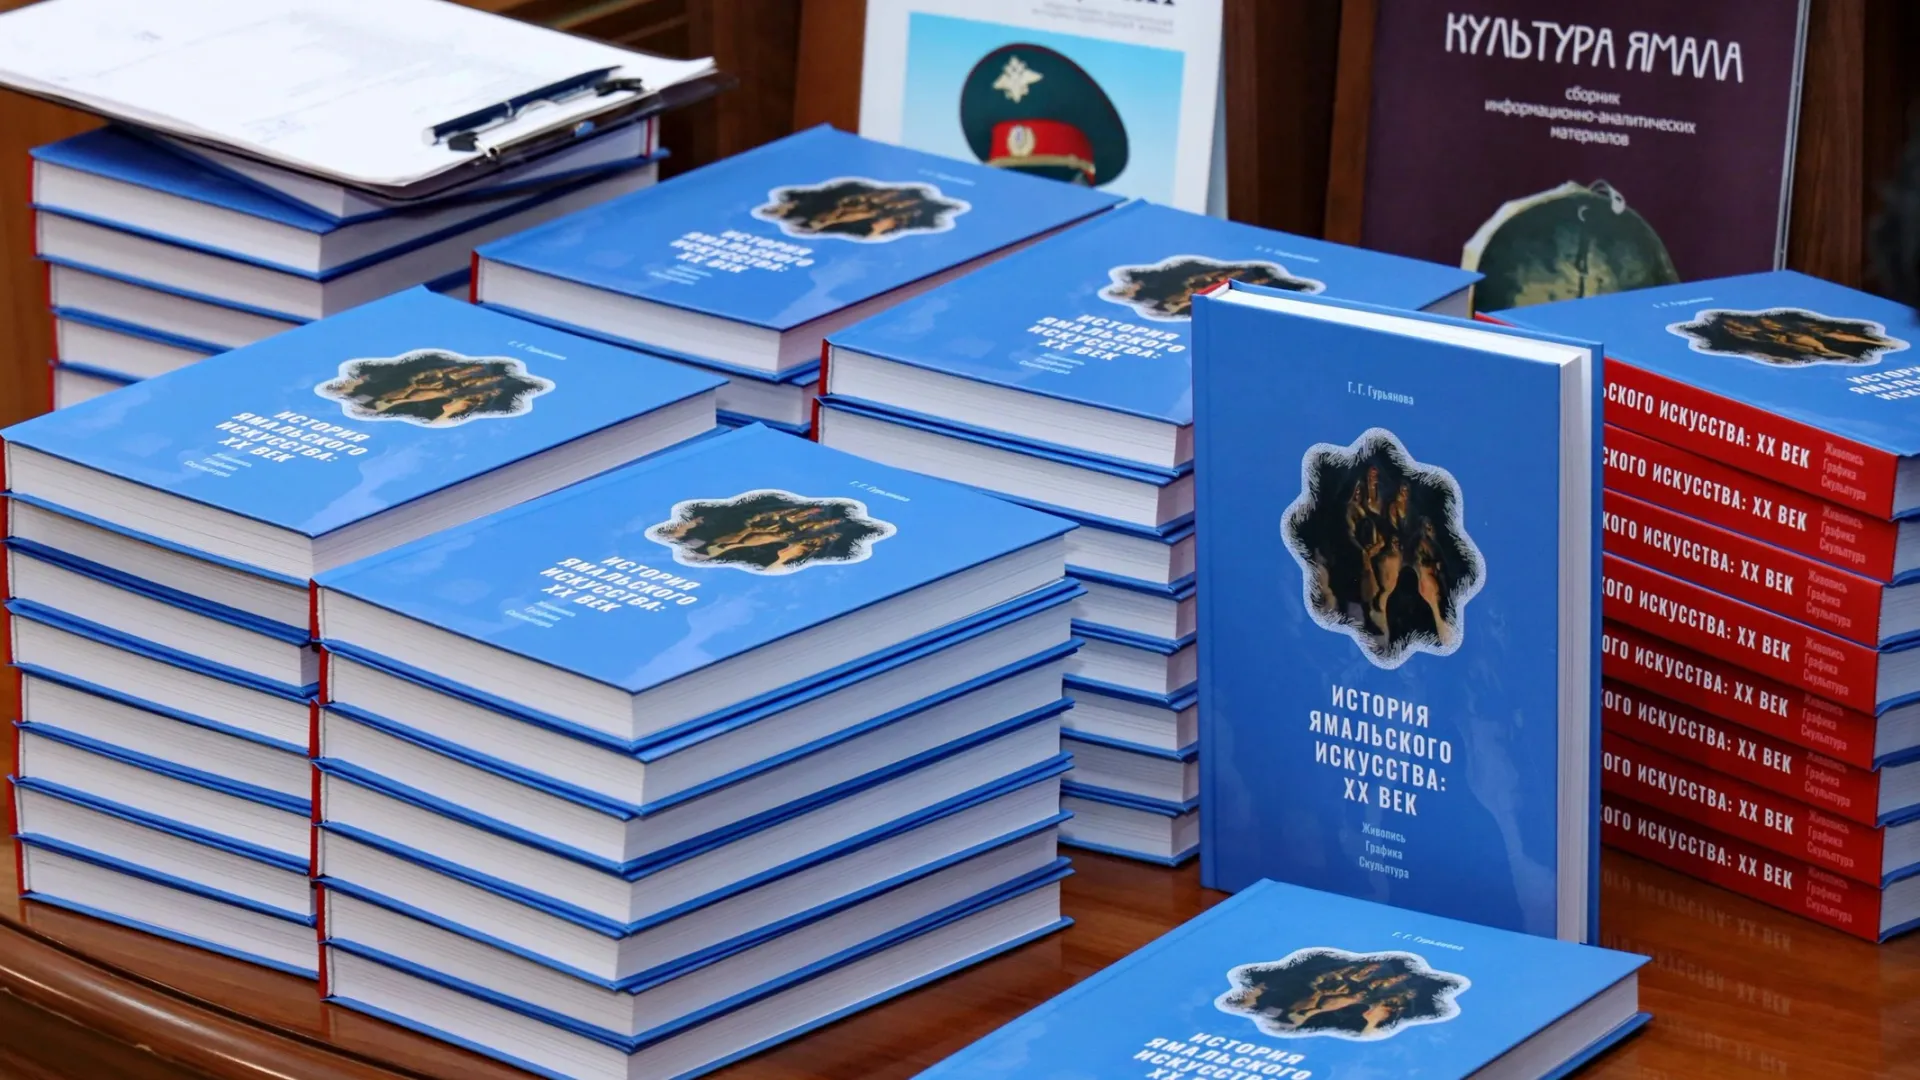 Ямальским литераторам помогут издать книги. Фото: Василий Петров / «Ямал-Медиа»